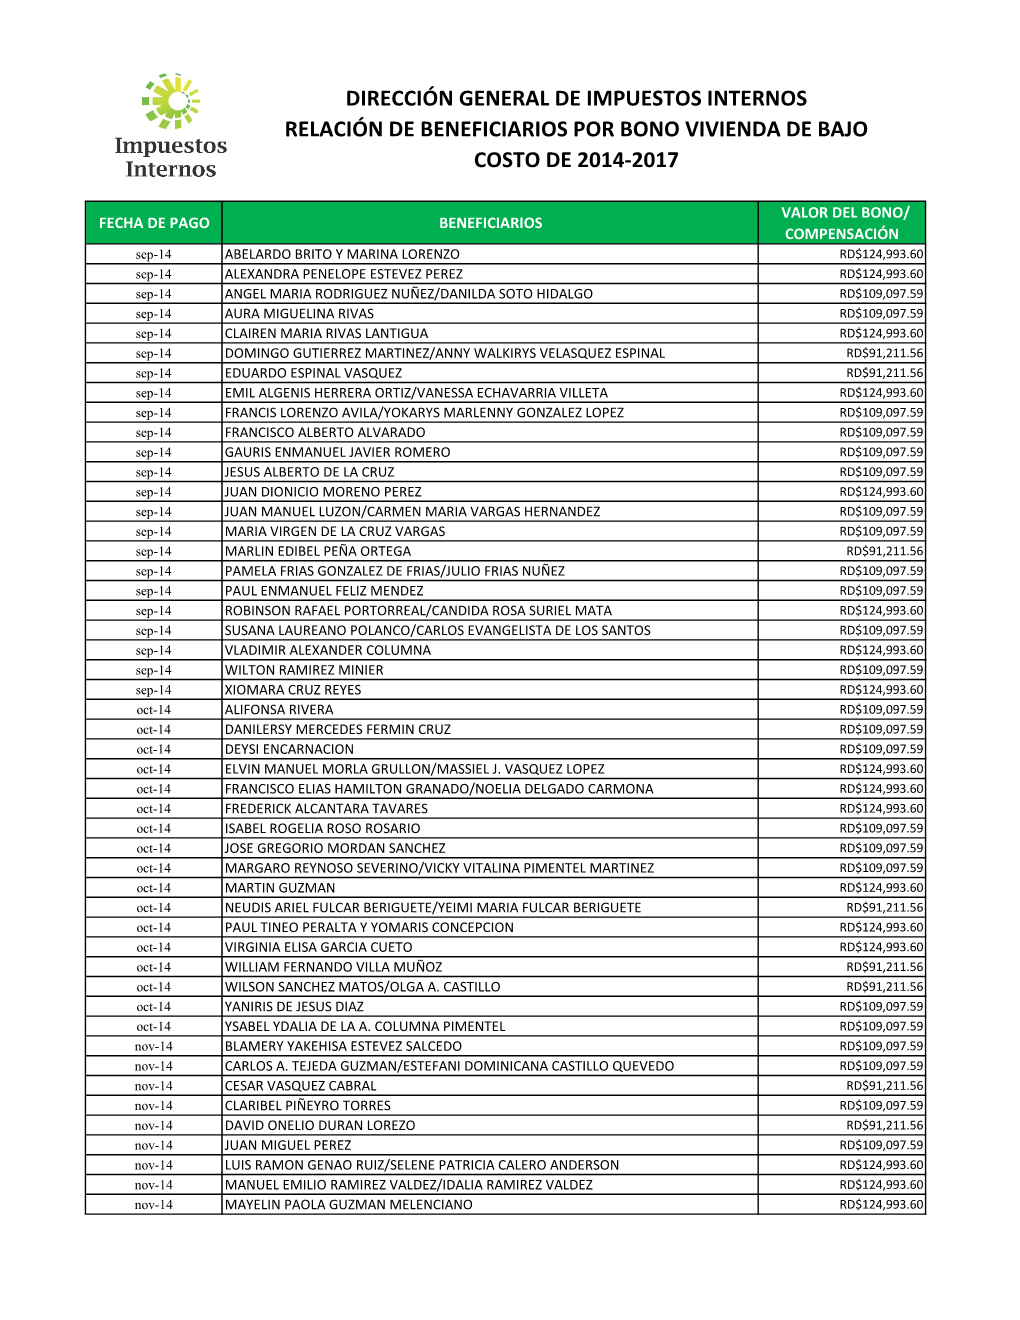 Dirección General De Impuestos Internos Relación De Beneficiarios Por Bono Vivienda De Bajo Costo De 2014-2017